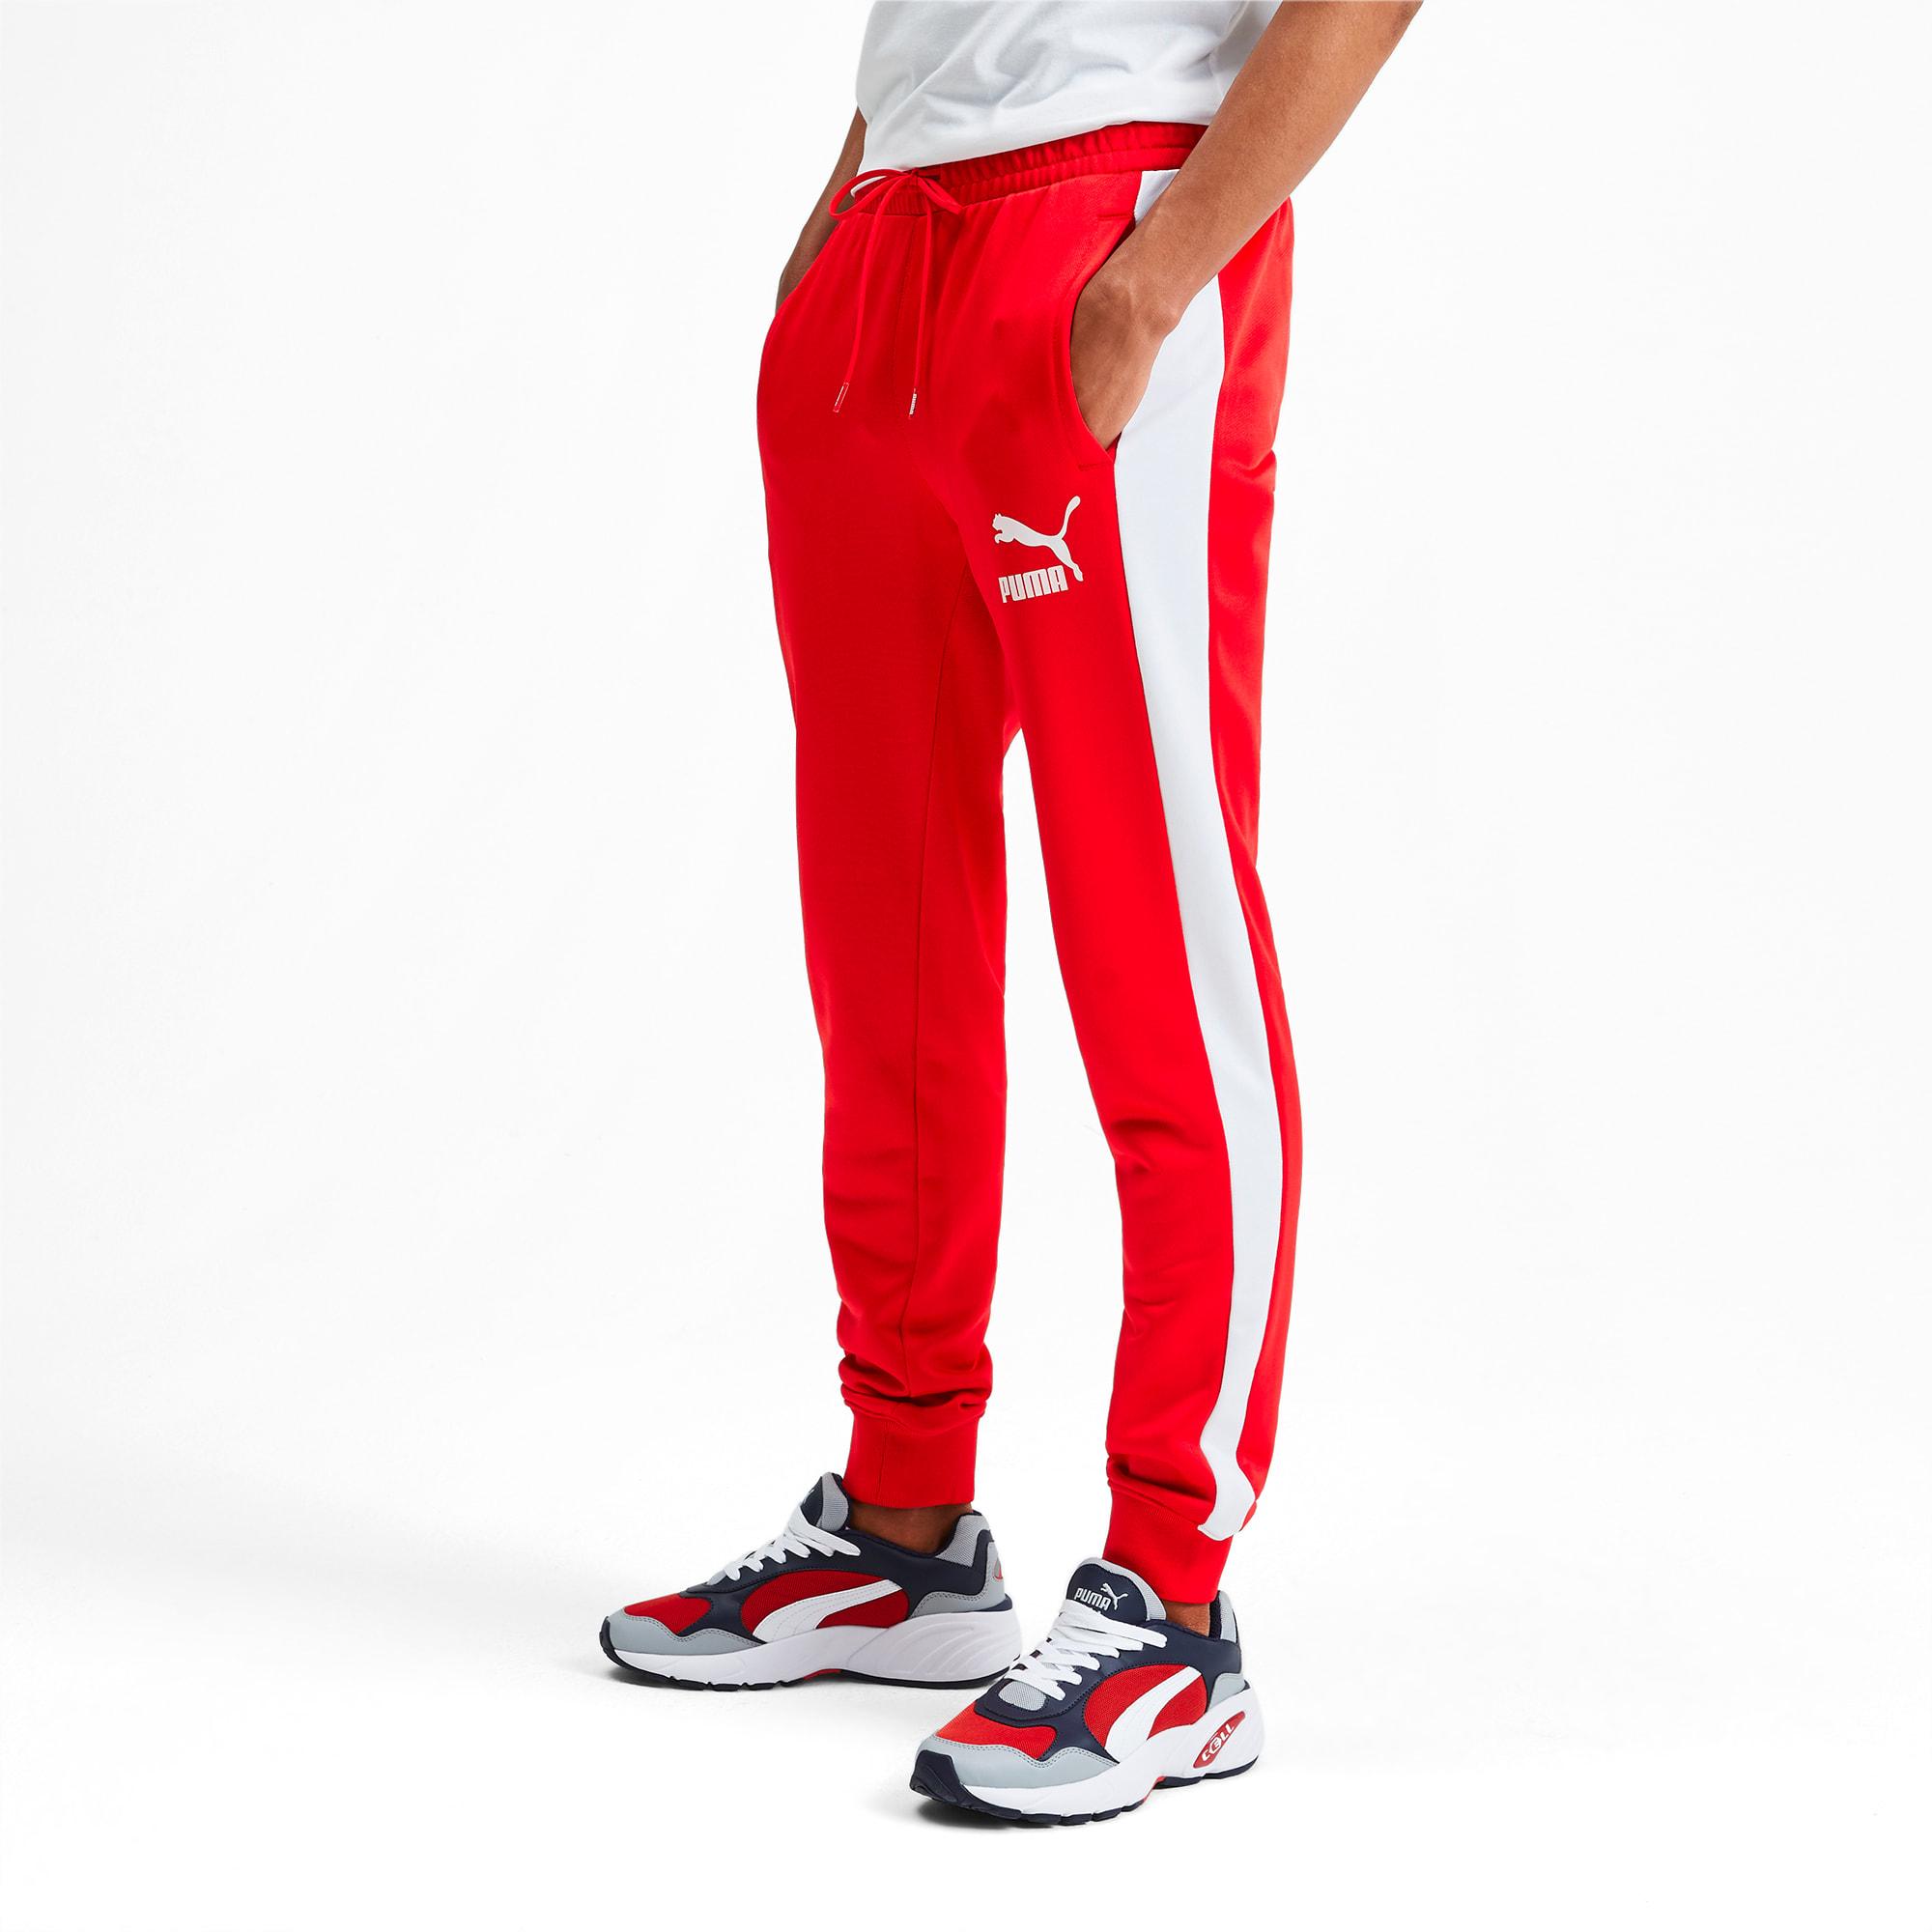 puma t7 track pants red